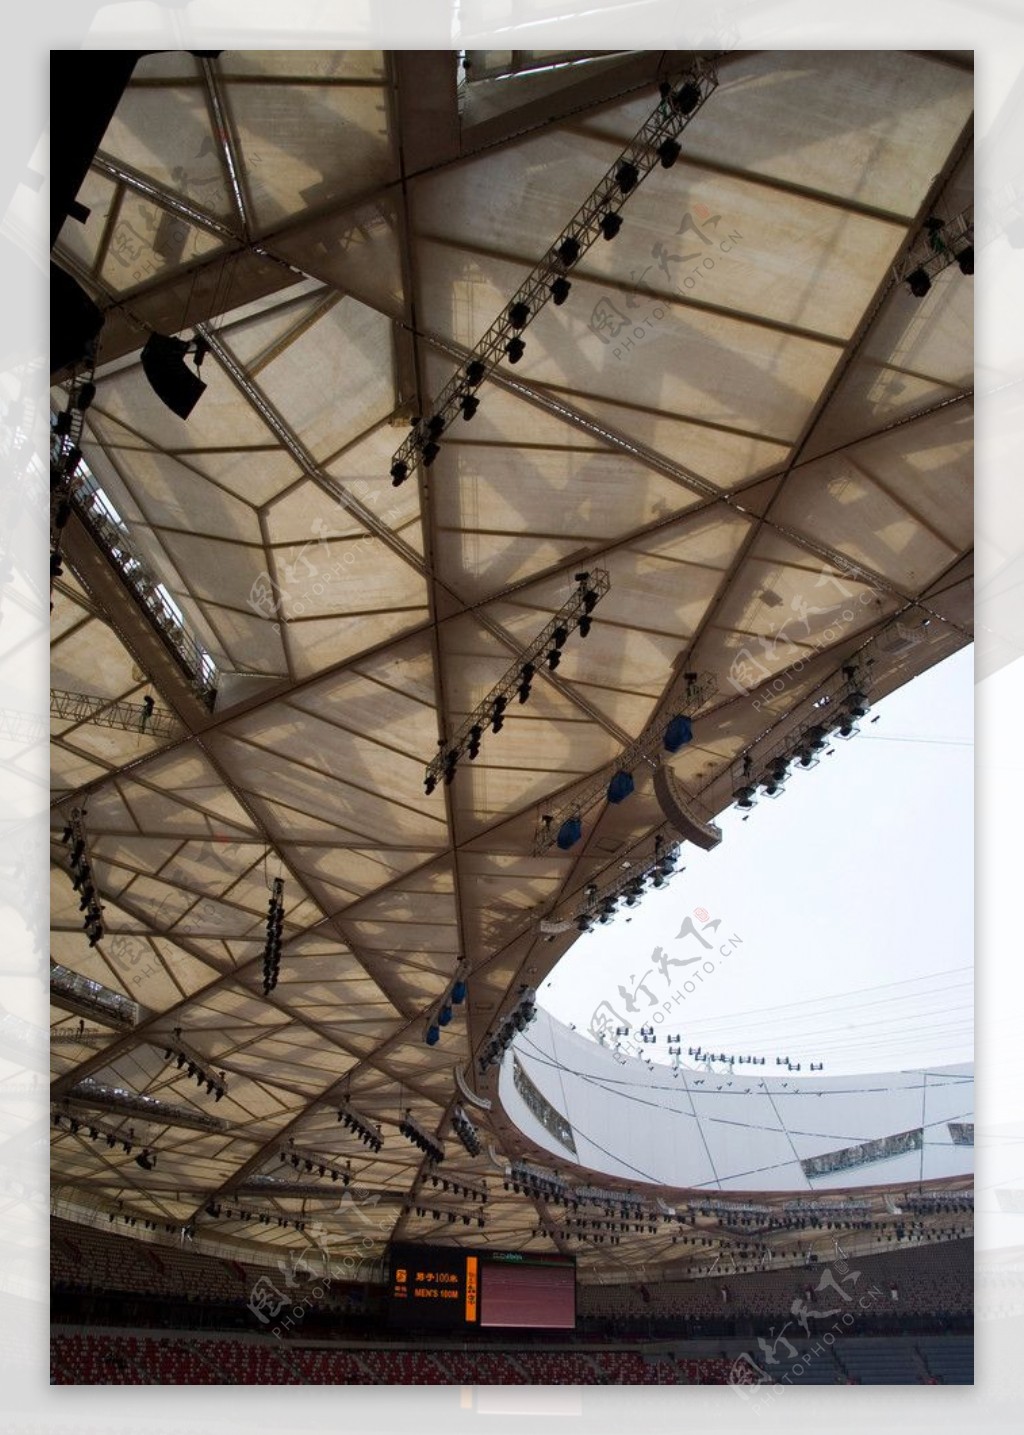 北京国家体育场鸟巢图片